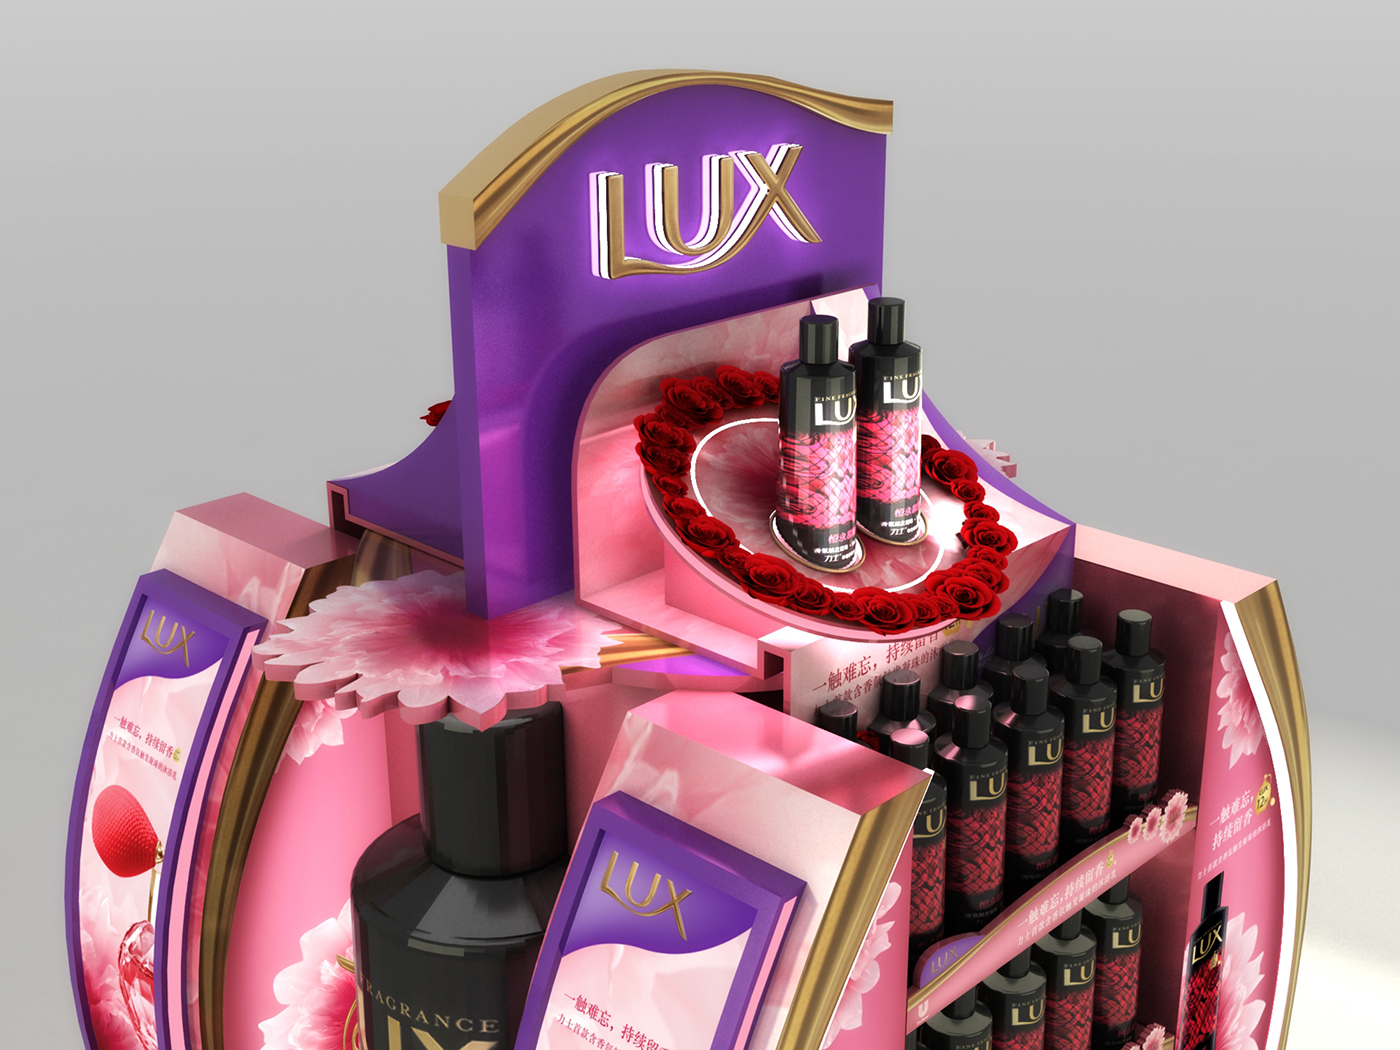 Lux posm pop Display merchandising